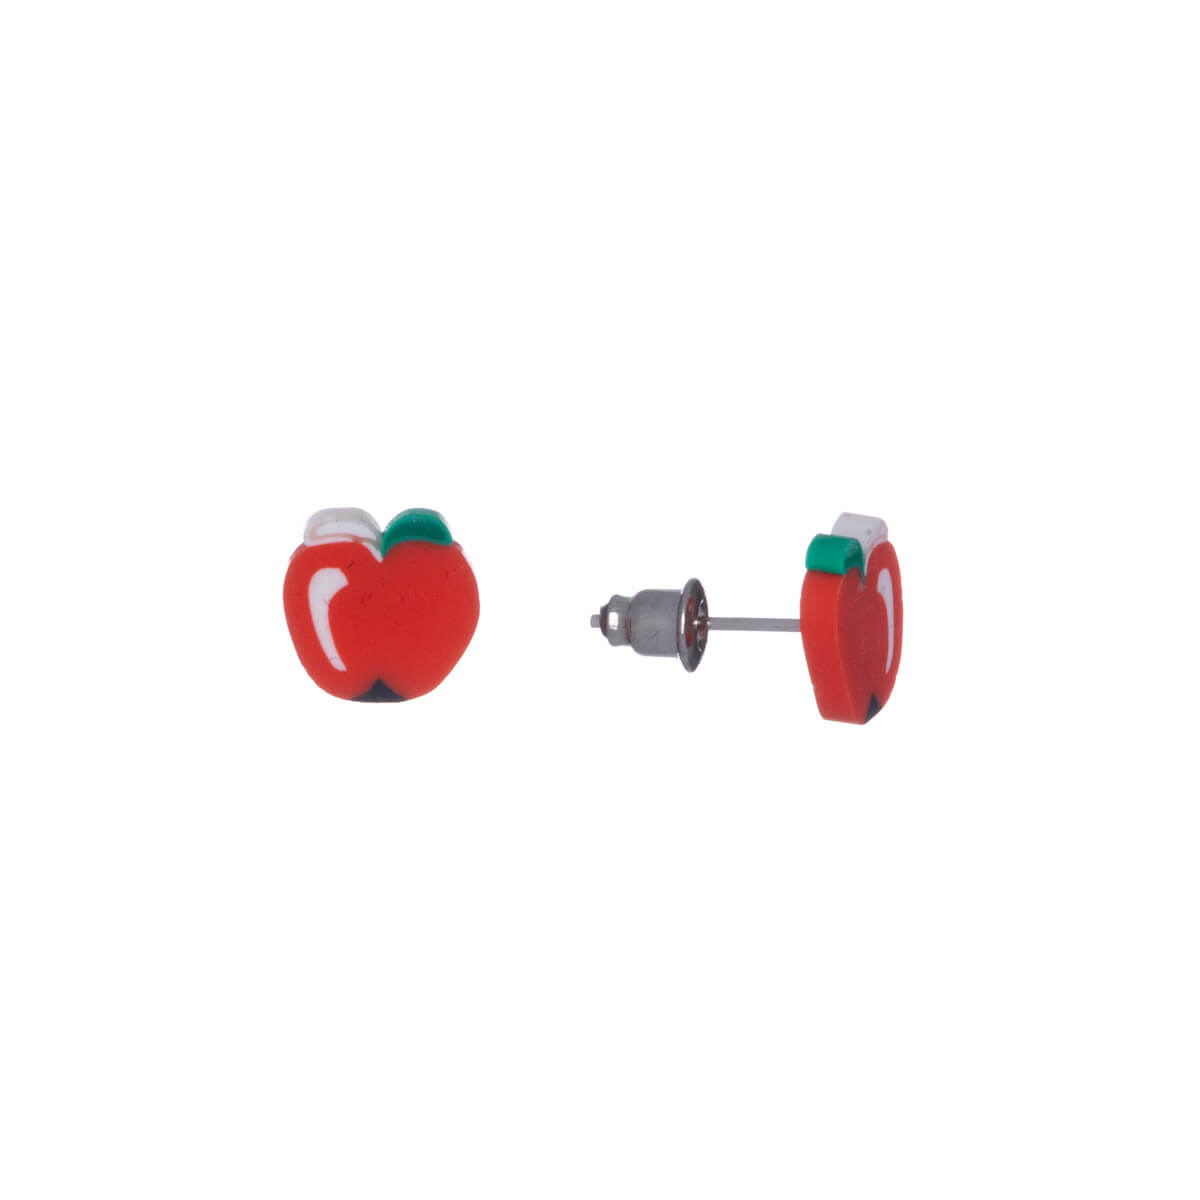 Apple fruit earrings